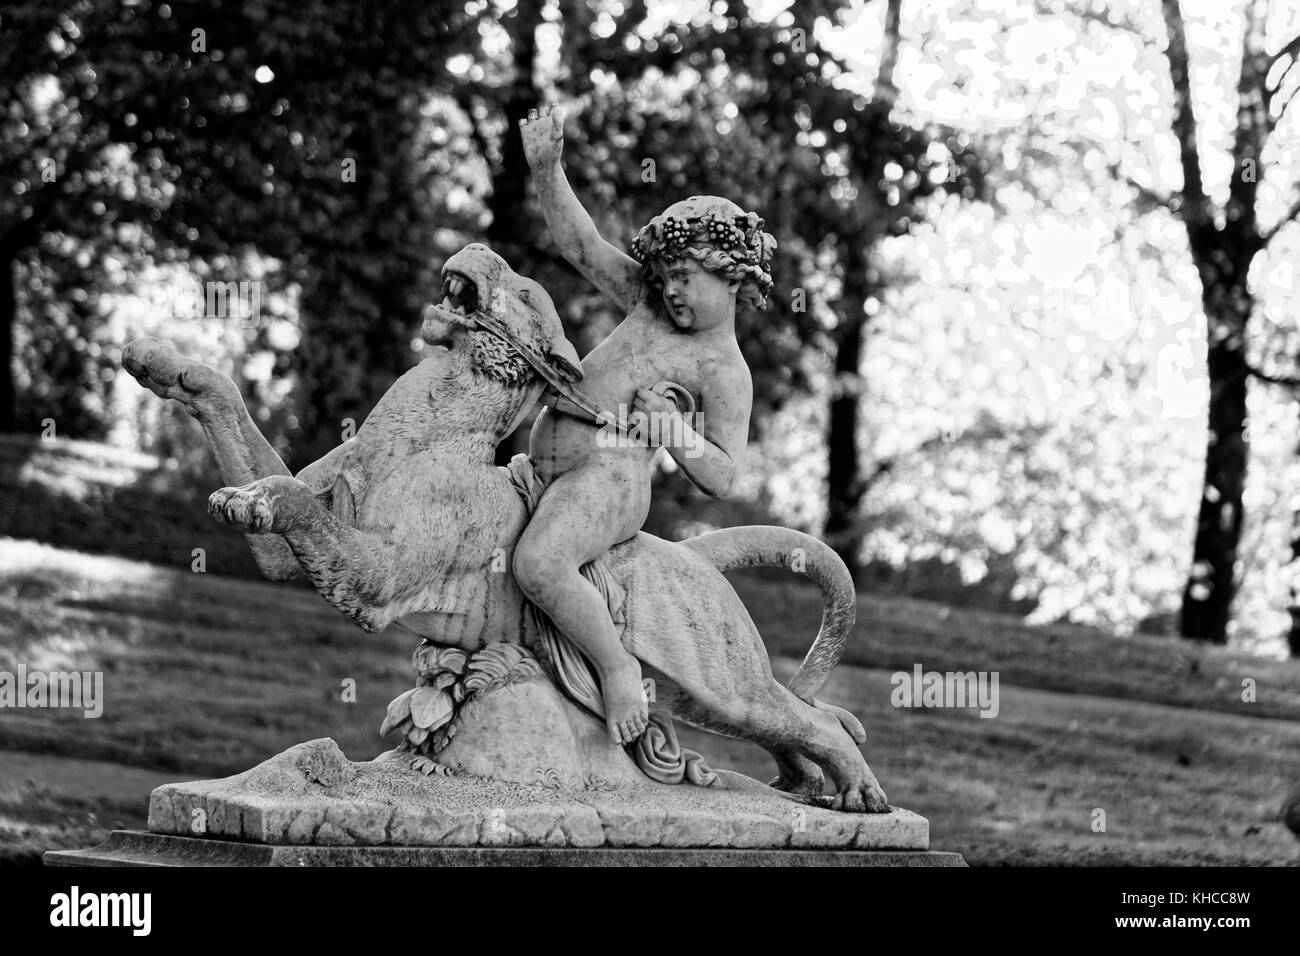 La statue de jeune garçon à cheval un animal sauvage comme lion dans parc du château de lancut famille Lubomirski, la Ruthénie subcarpatique voivodship, Pologne europe Banque D'Images